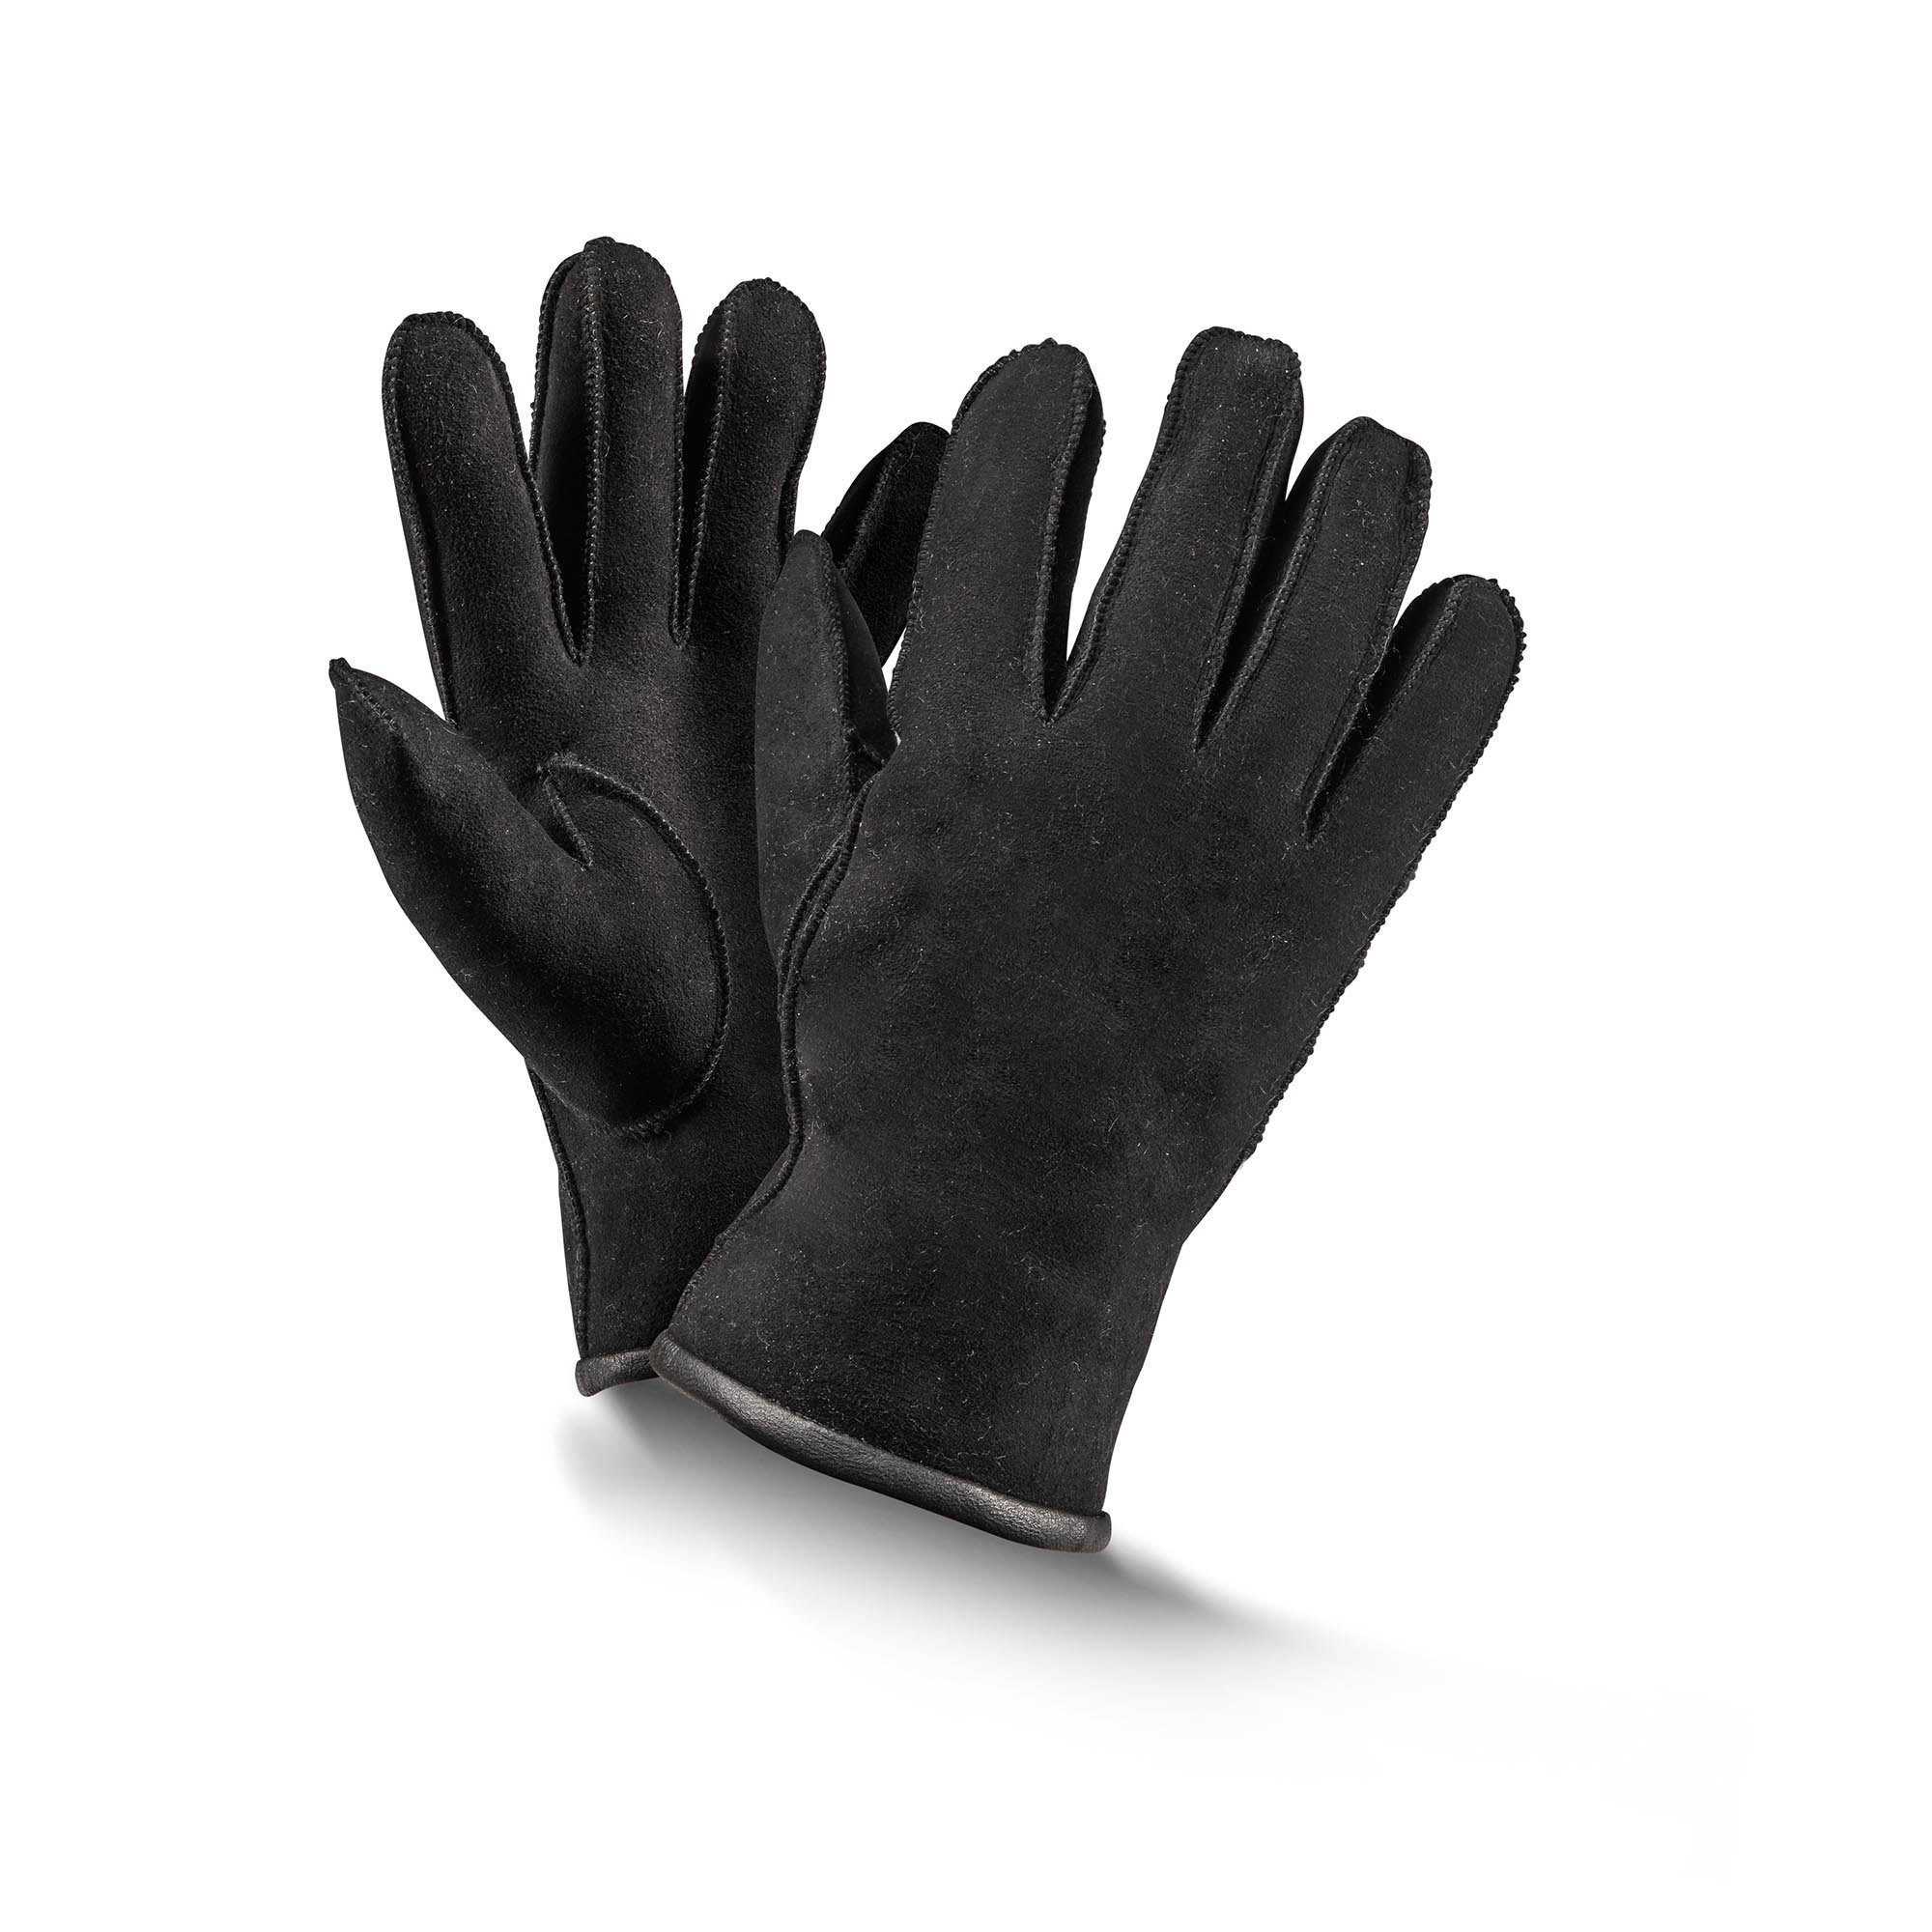 Fellhof Baumwollhandschuhe Handschuhe Fingerhandschuhe schwarz/ grau Gr braun/ 6-10 Basic